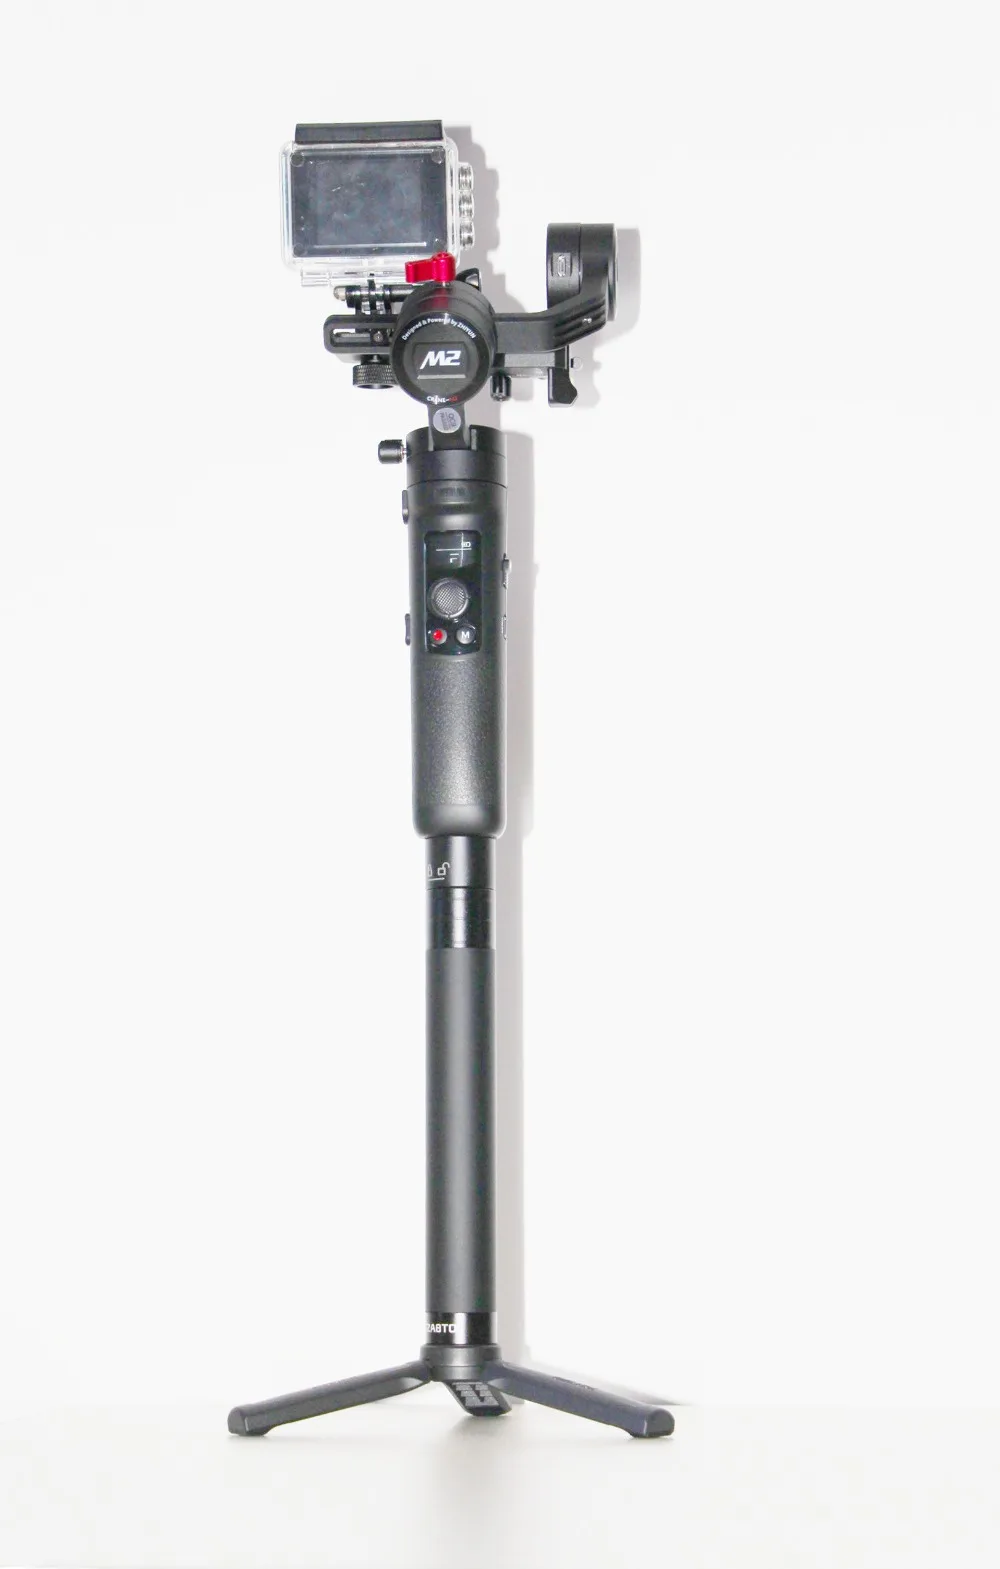 Zhiyun Crane-M2 3-осевой ручной шарнирный стабилизатор для камеры GoPro, Для беззеркальных камер, смартфон, экшн-камера, Быстрый вкл/выкл, вращение на 360 °